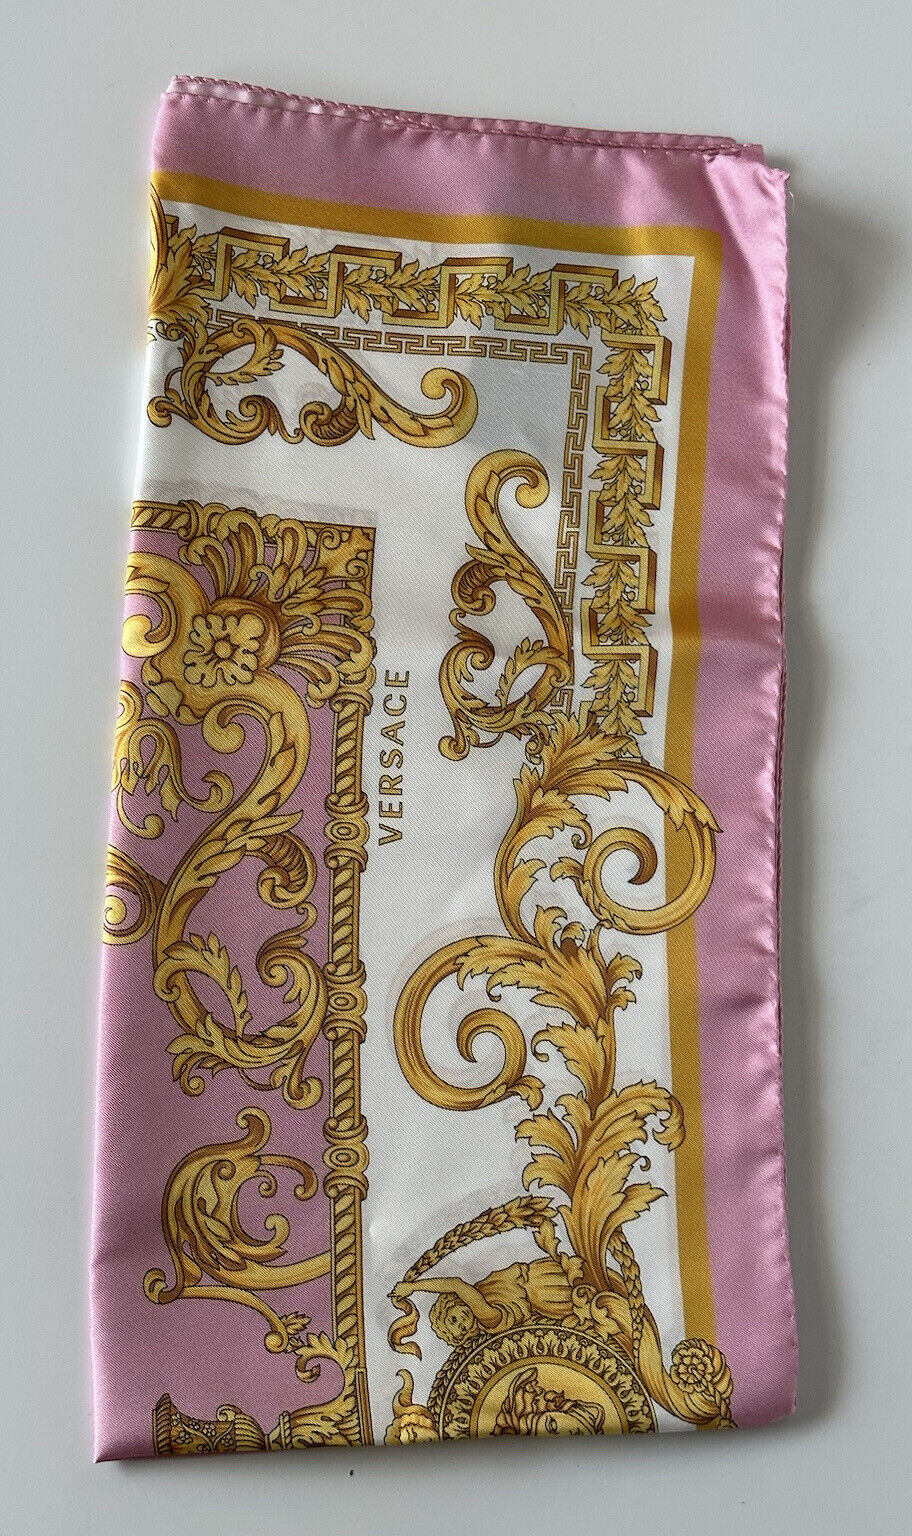 NWT $500 Versace Medusa Silk Twill Barocco Foulard Scarf 36.5”x 36” IT IF090018